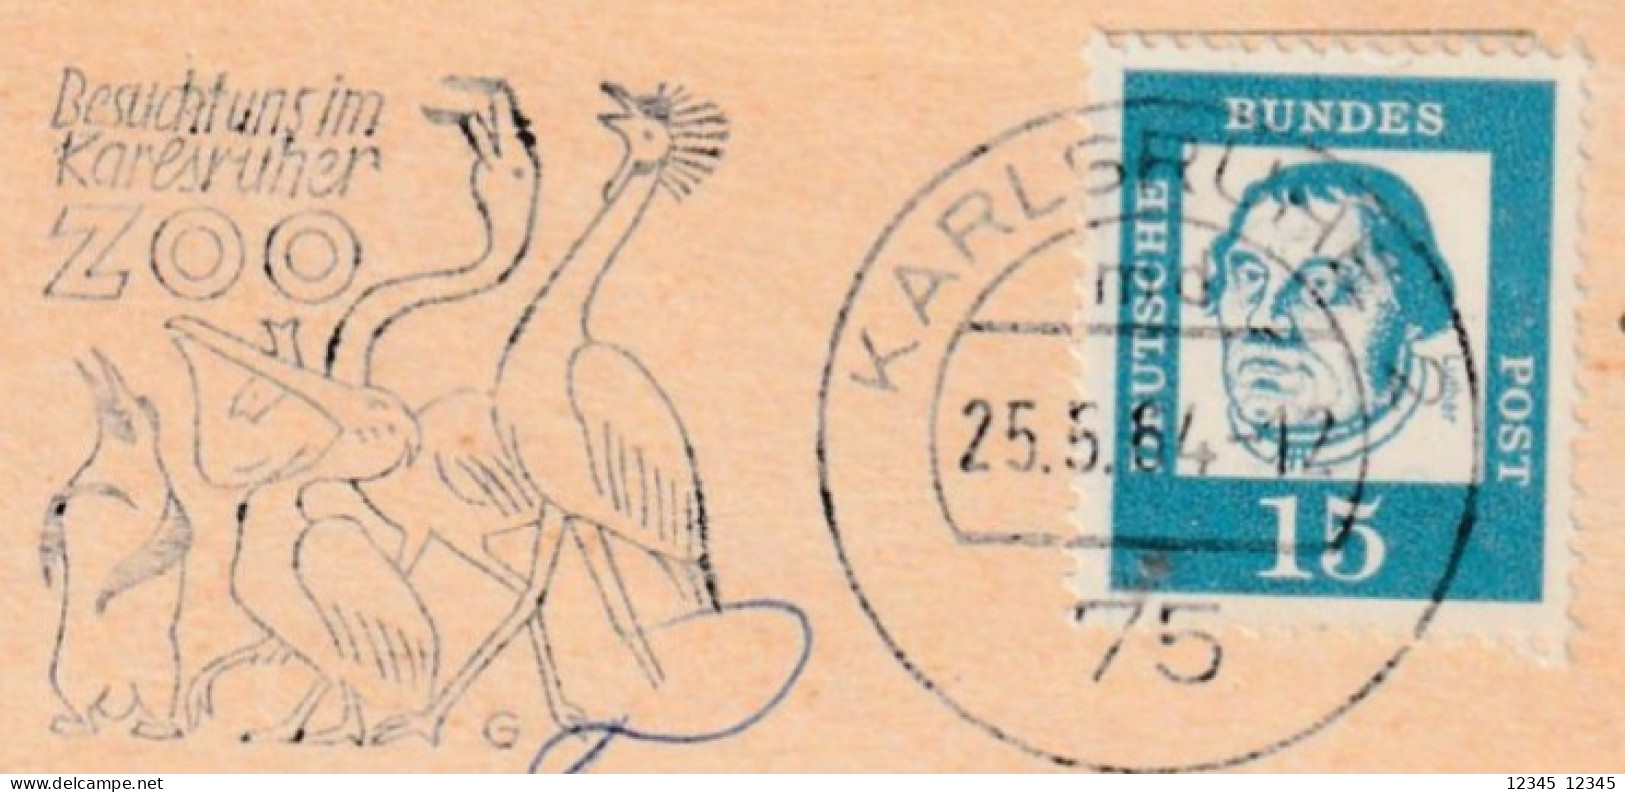 Duitsland 1964, Stamped Bird Motive (Besucht Uns Im Karlsruher Zoo) - Cartas & Documentos